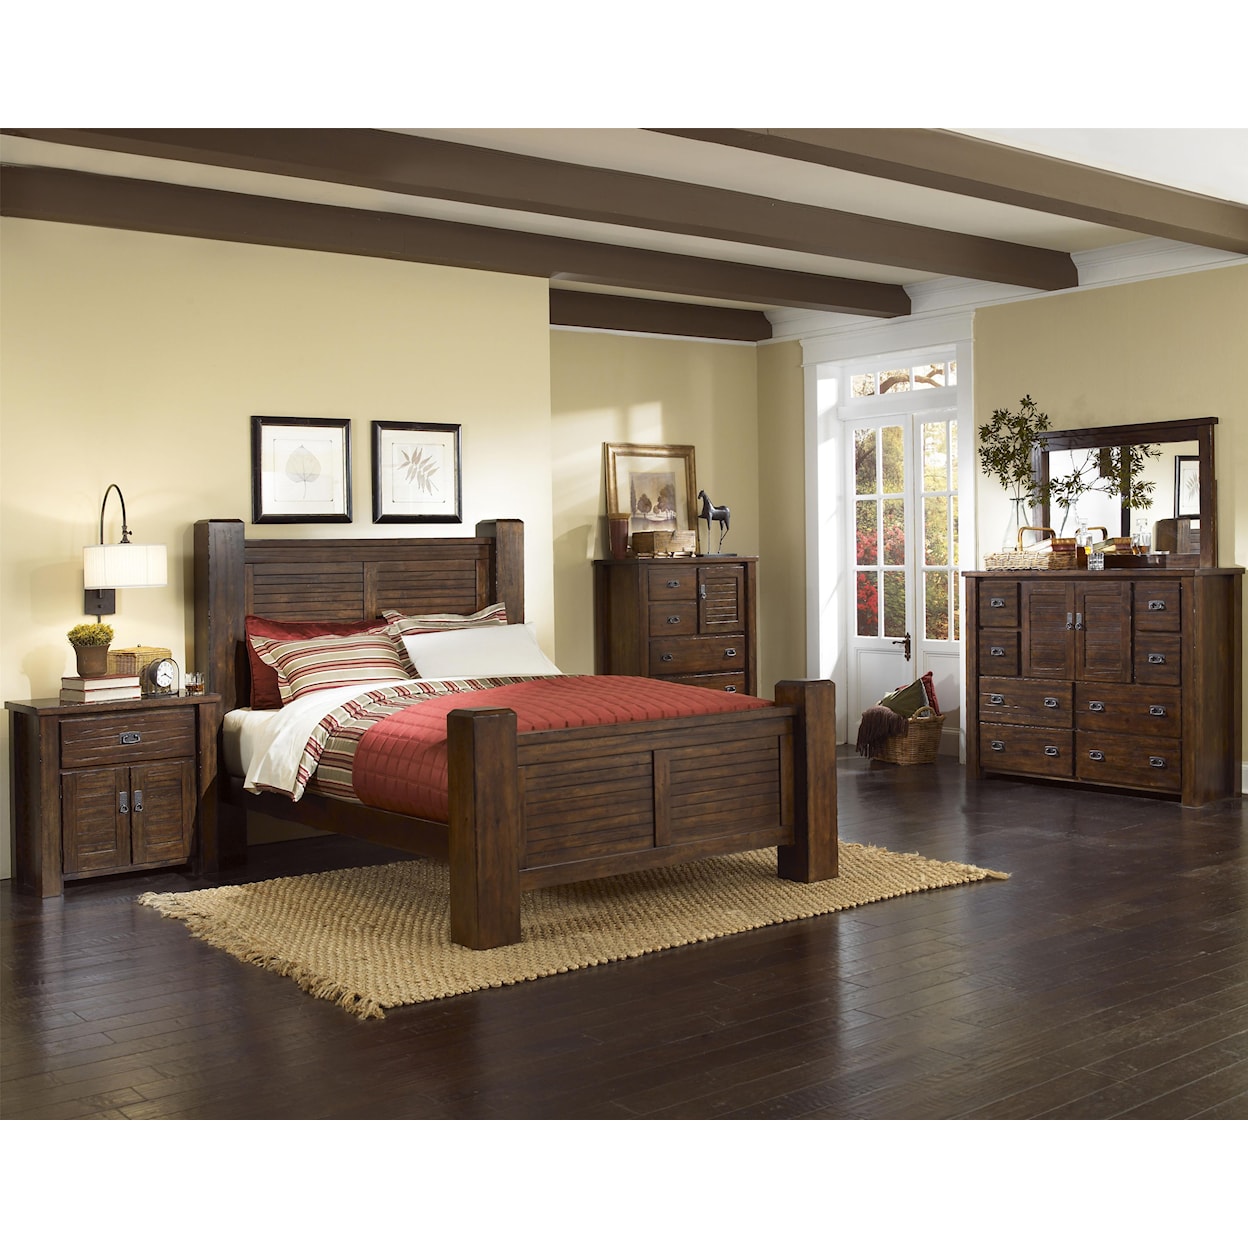 Progressive Furniture Trestlewood King Post Bed